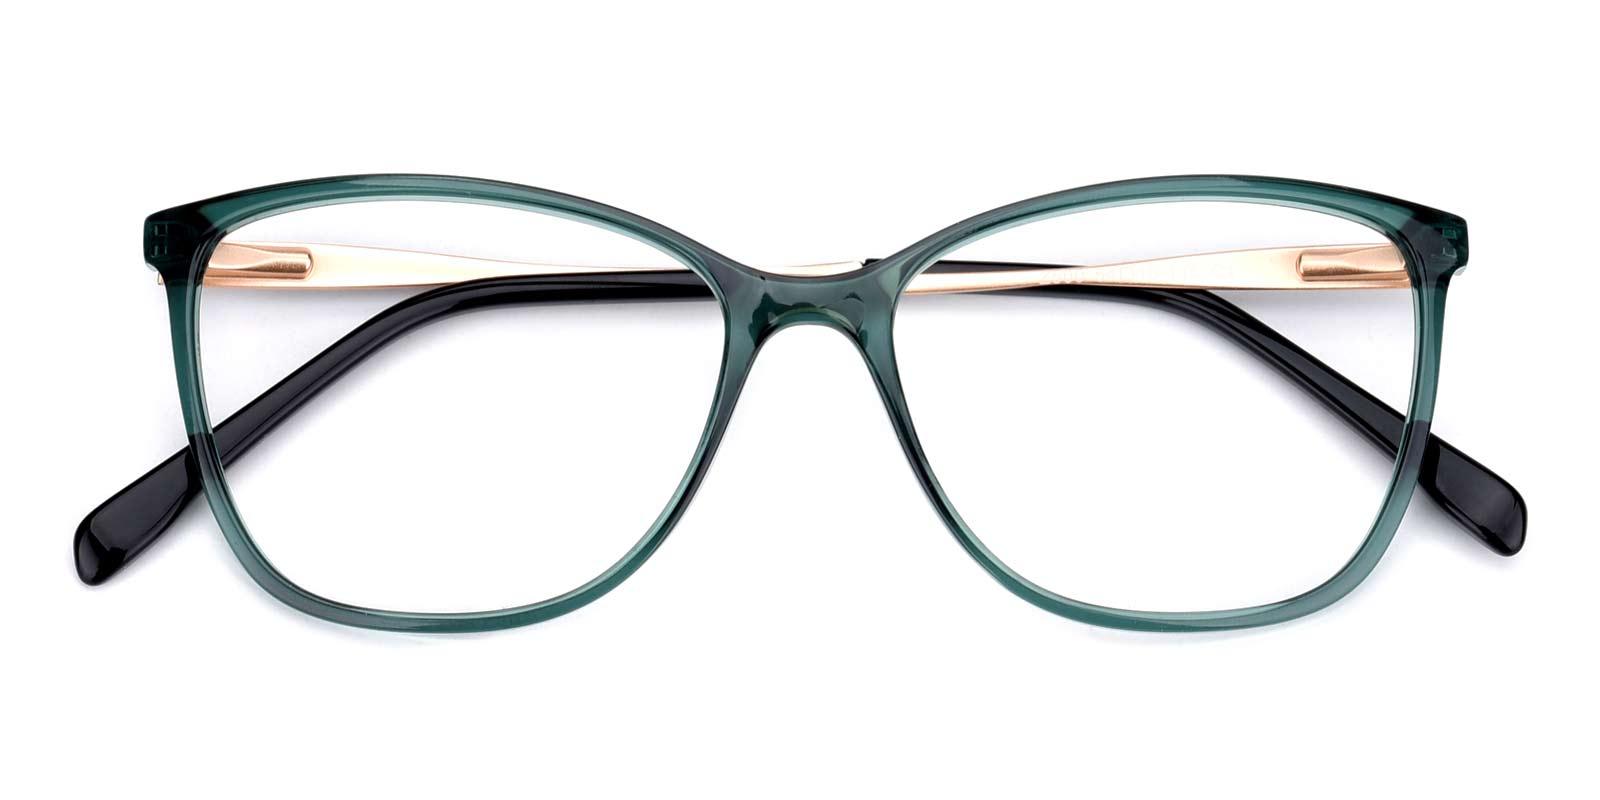 Night-Green-Rectangle / Cat-Acetate-Eyeglasses-detail